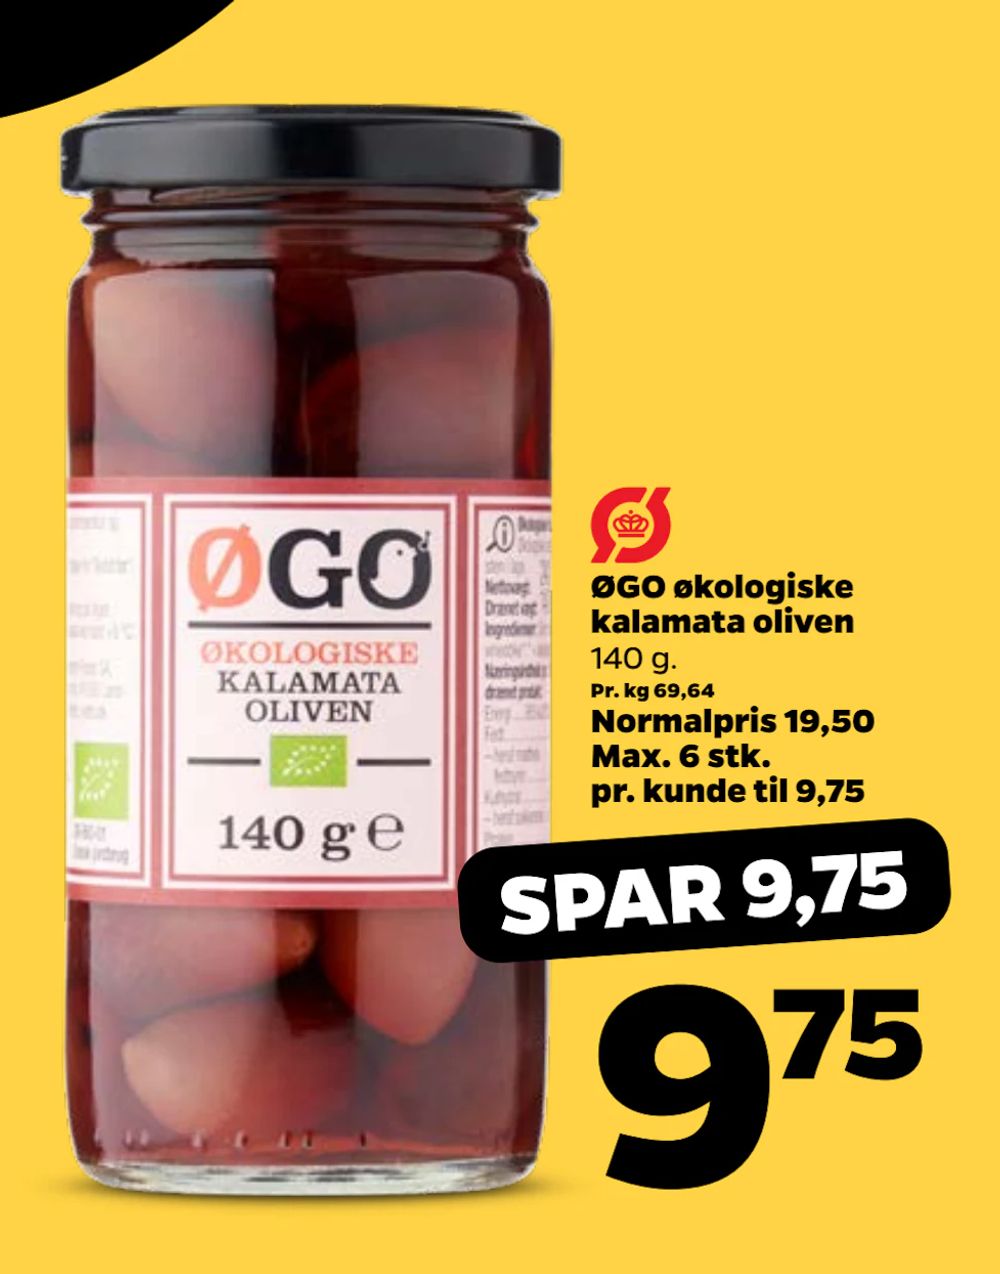 Tilbud på ØGO økologiske kalamata oliven fra Netto til 9,75 kr.